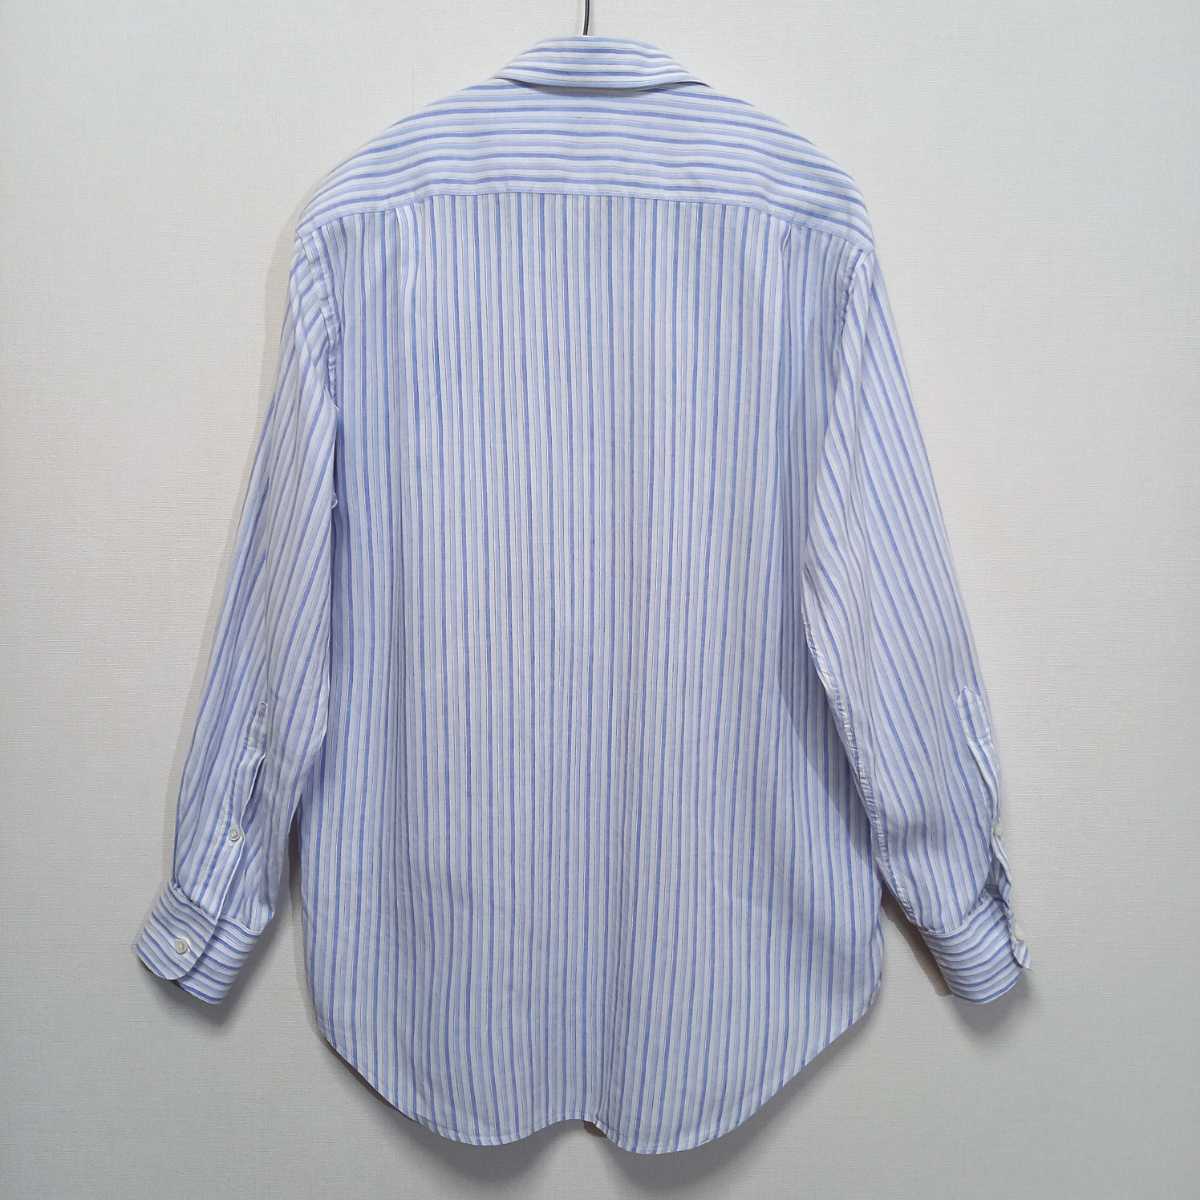 イタリア製 ロロピアーナ ワンピースカラー 綿麻 ストライプ シャツ メンズ S スーツ ドレスシャツ リネンシャツ イタリアンカラー の画像9